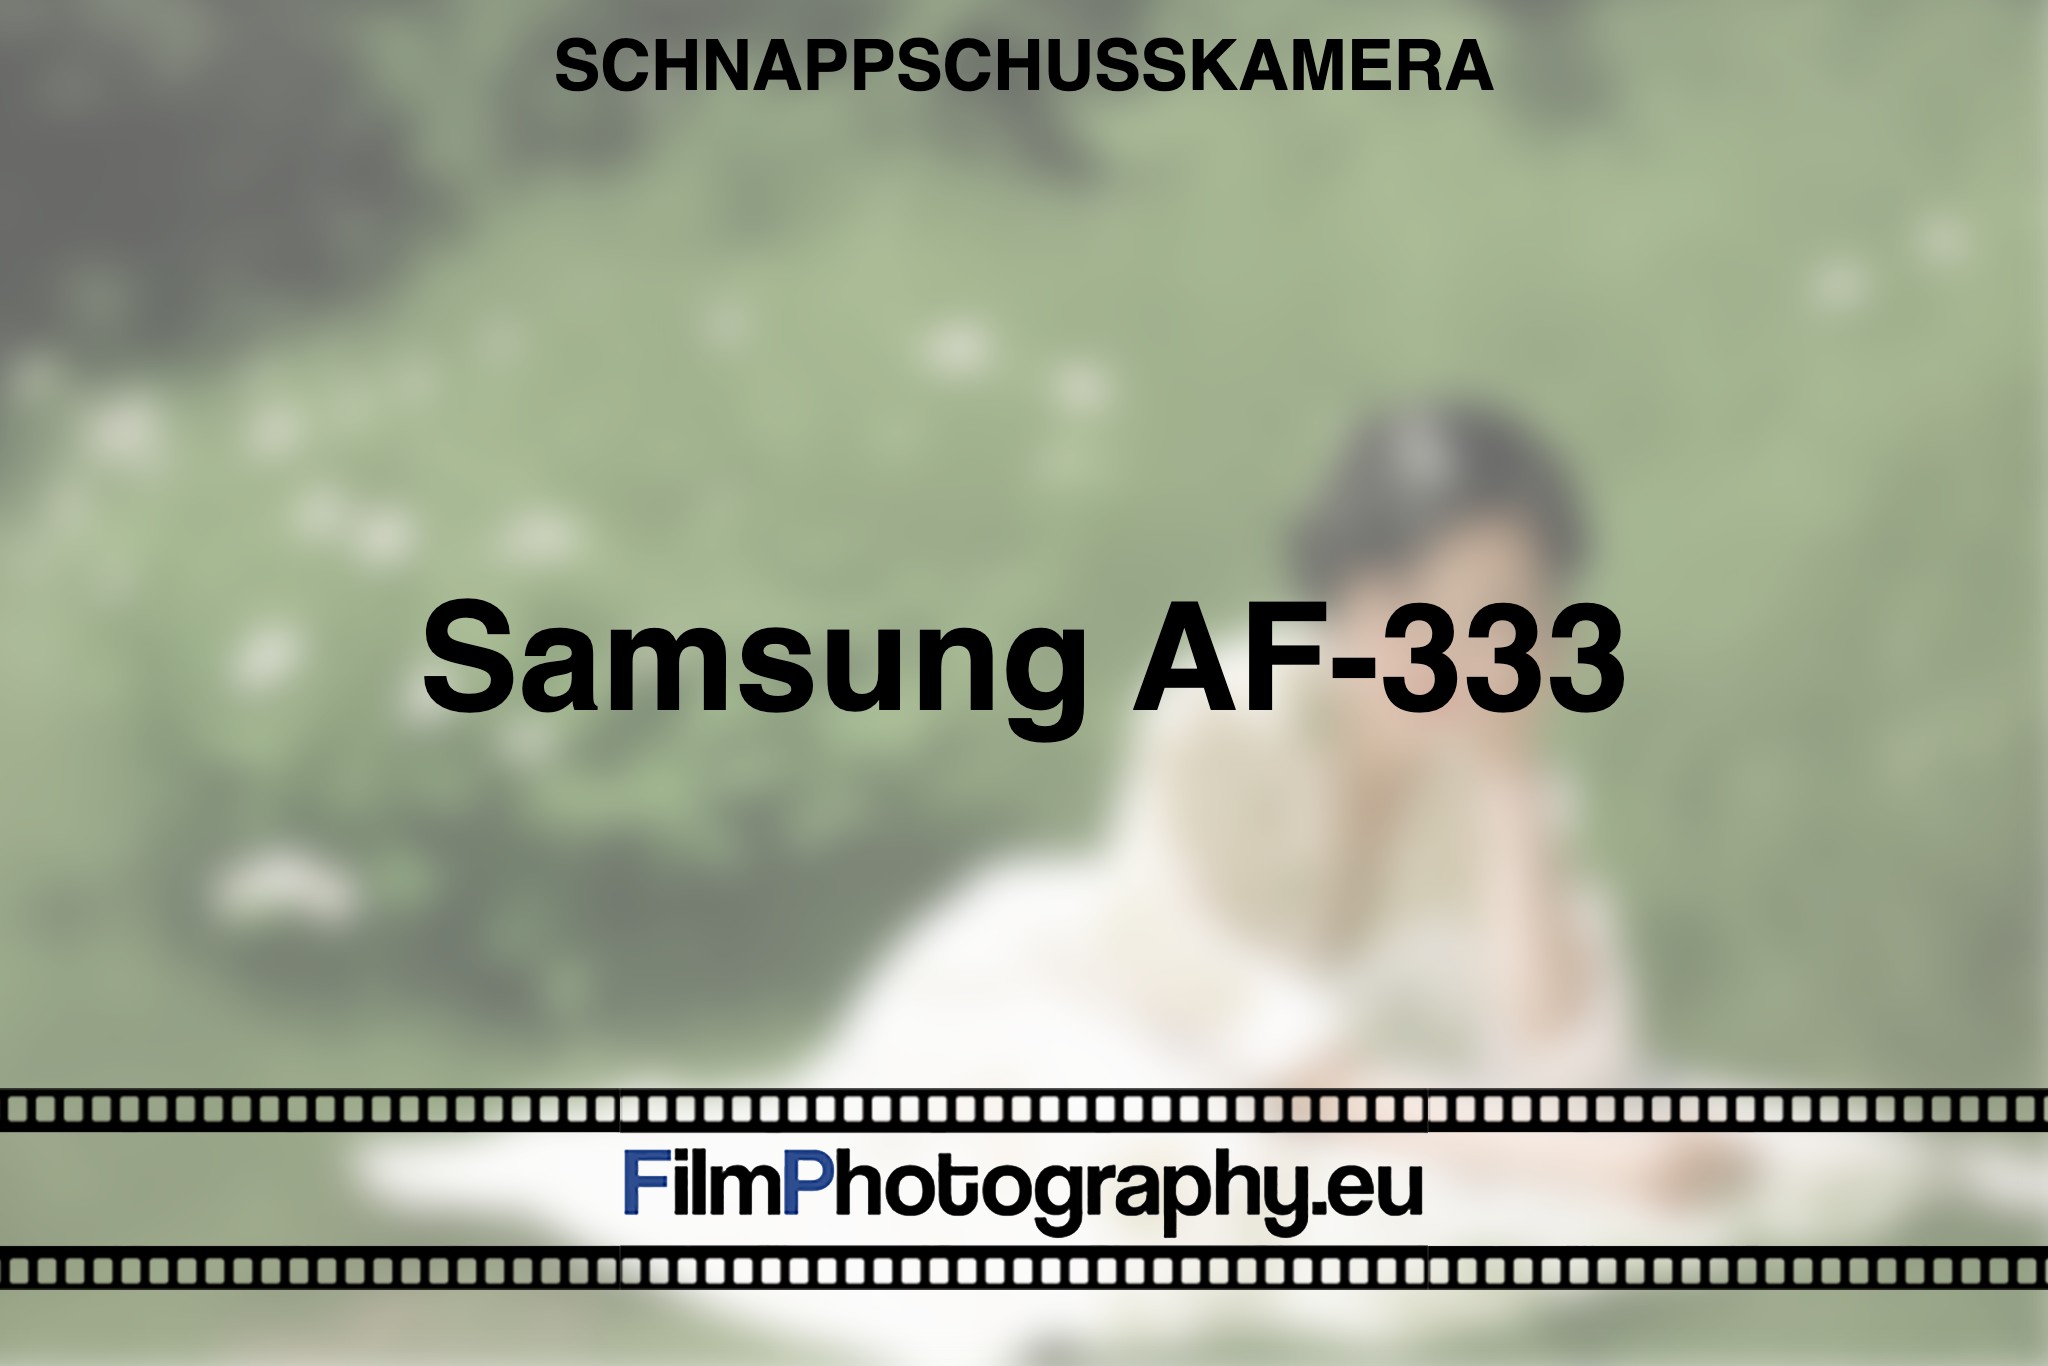 samsung-af-333-schnappschusskamera-bnv